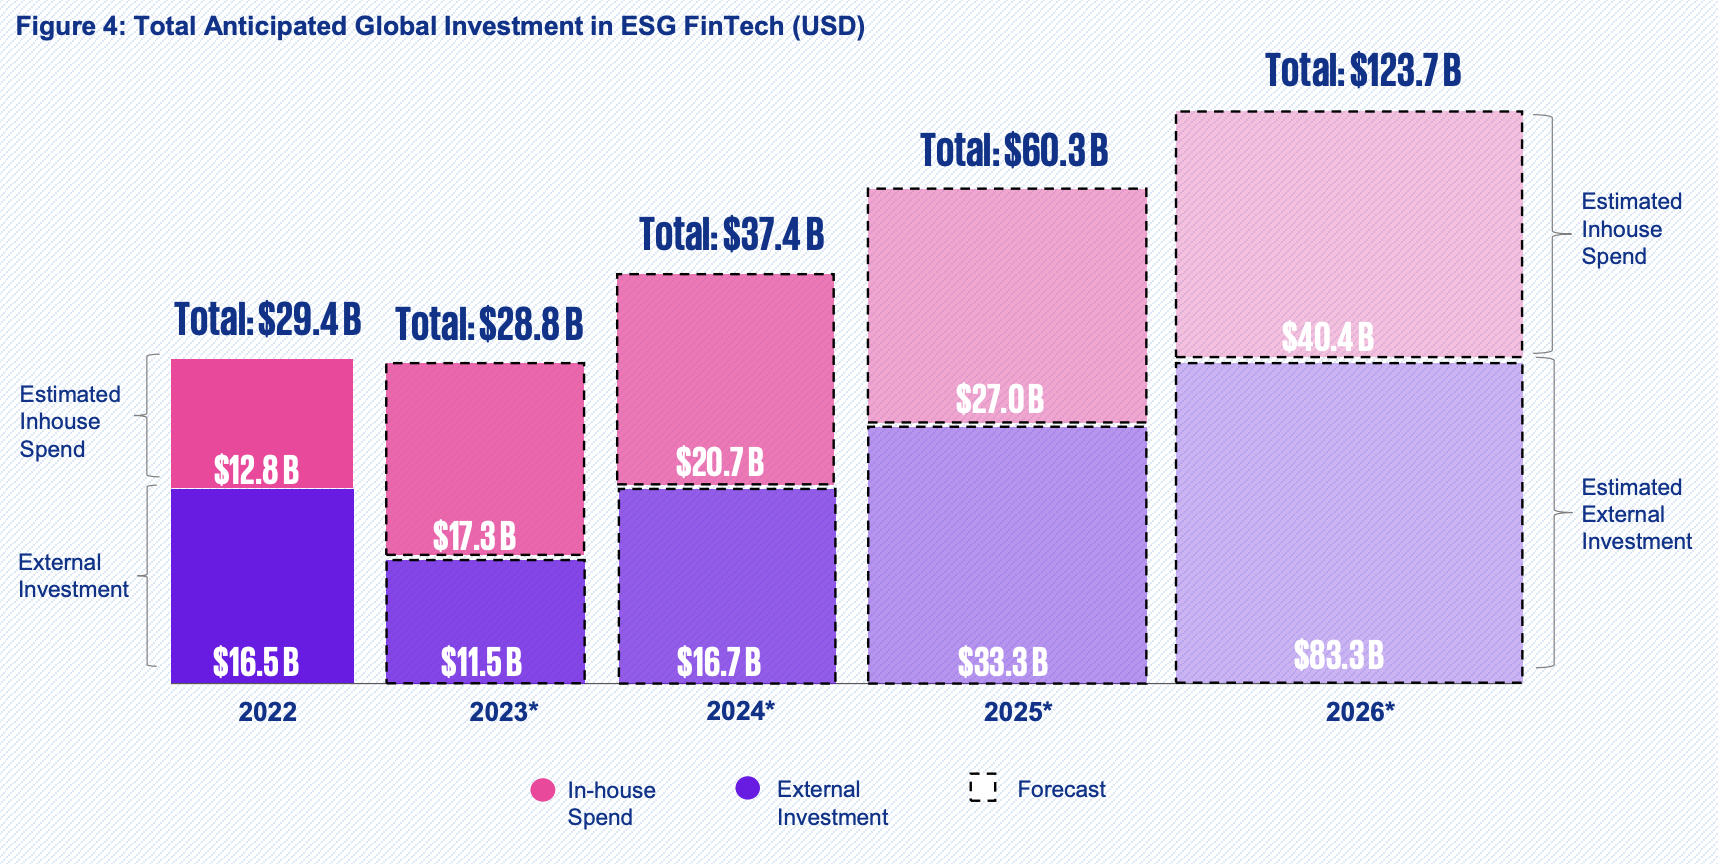 การลงทุนทั่วโลกที่คาดหวังใน ESG fintech (US$)